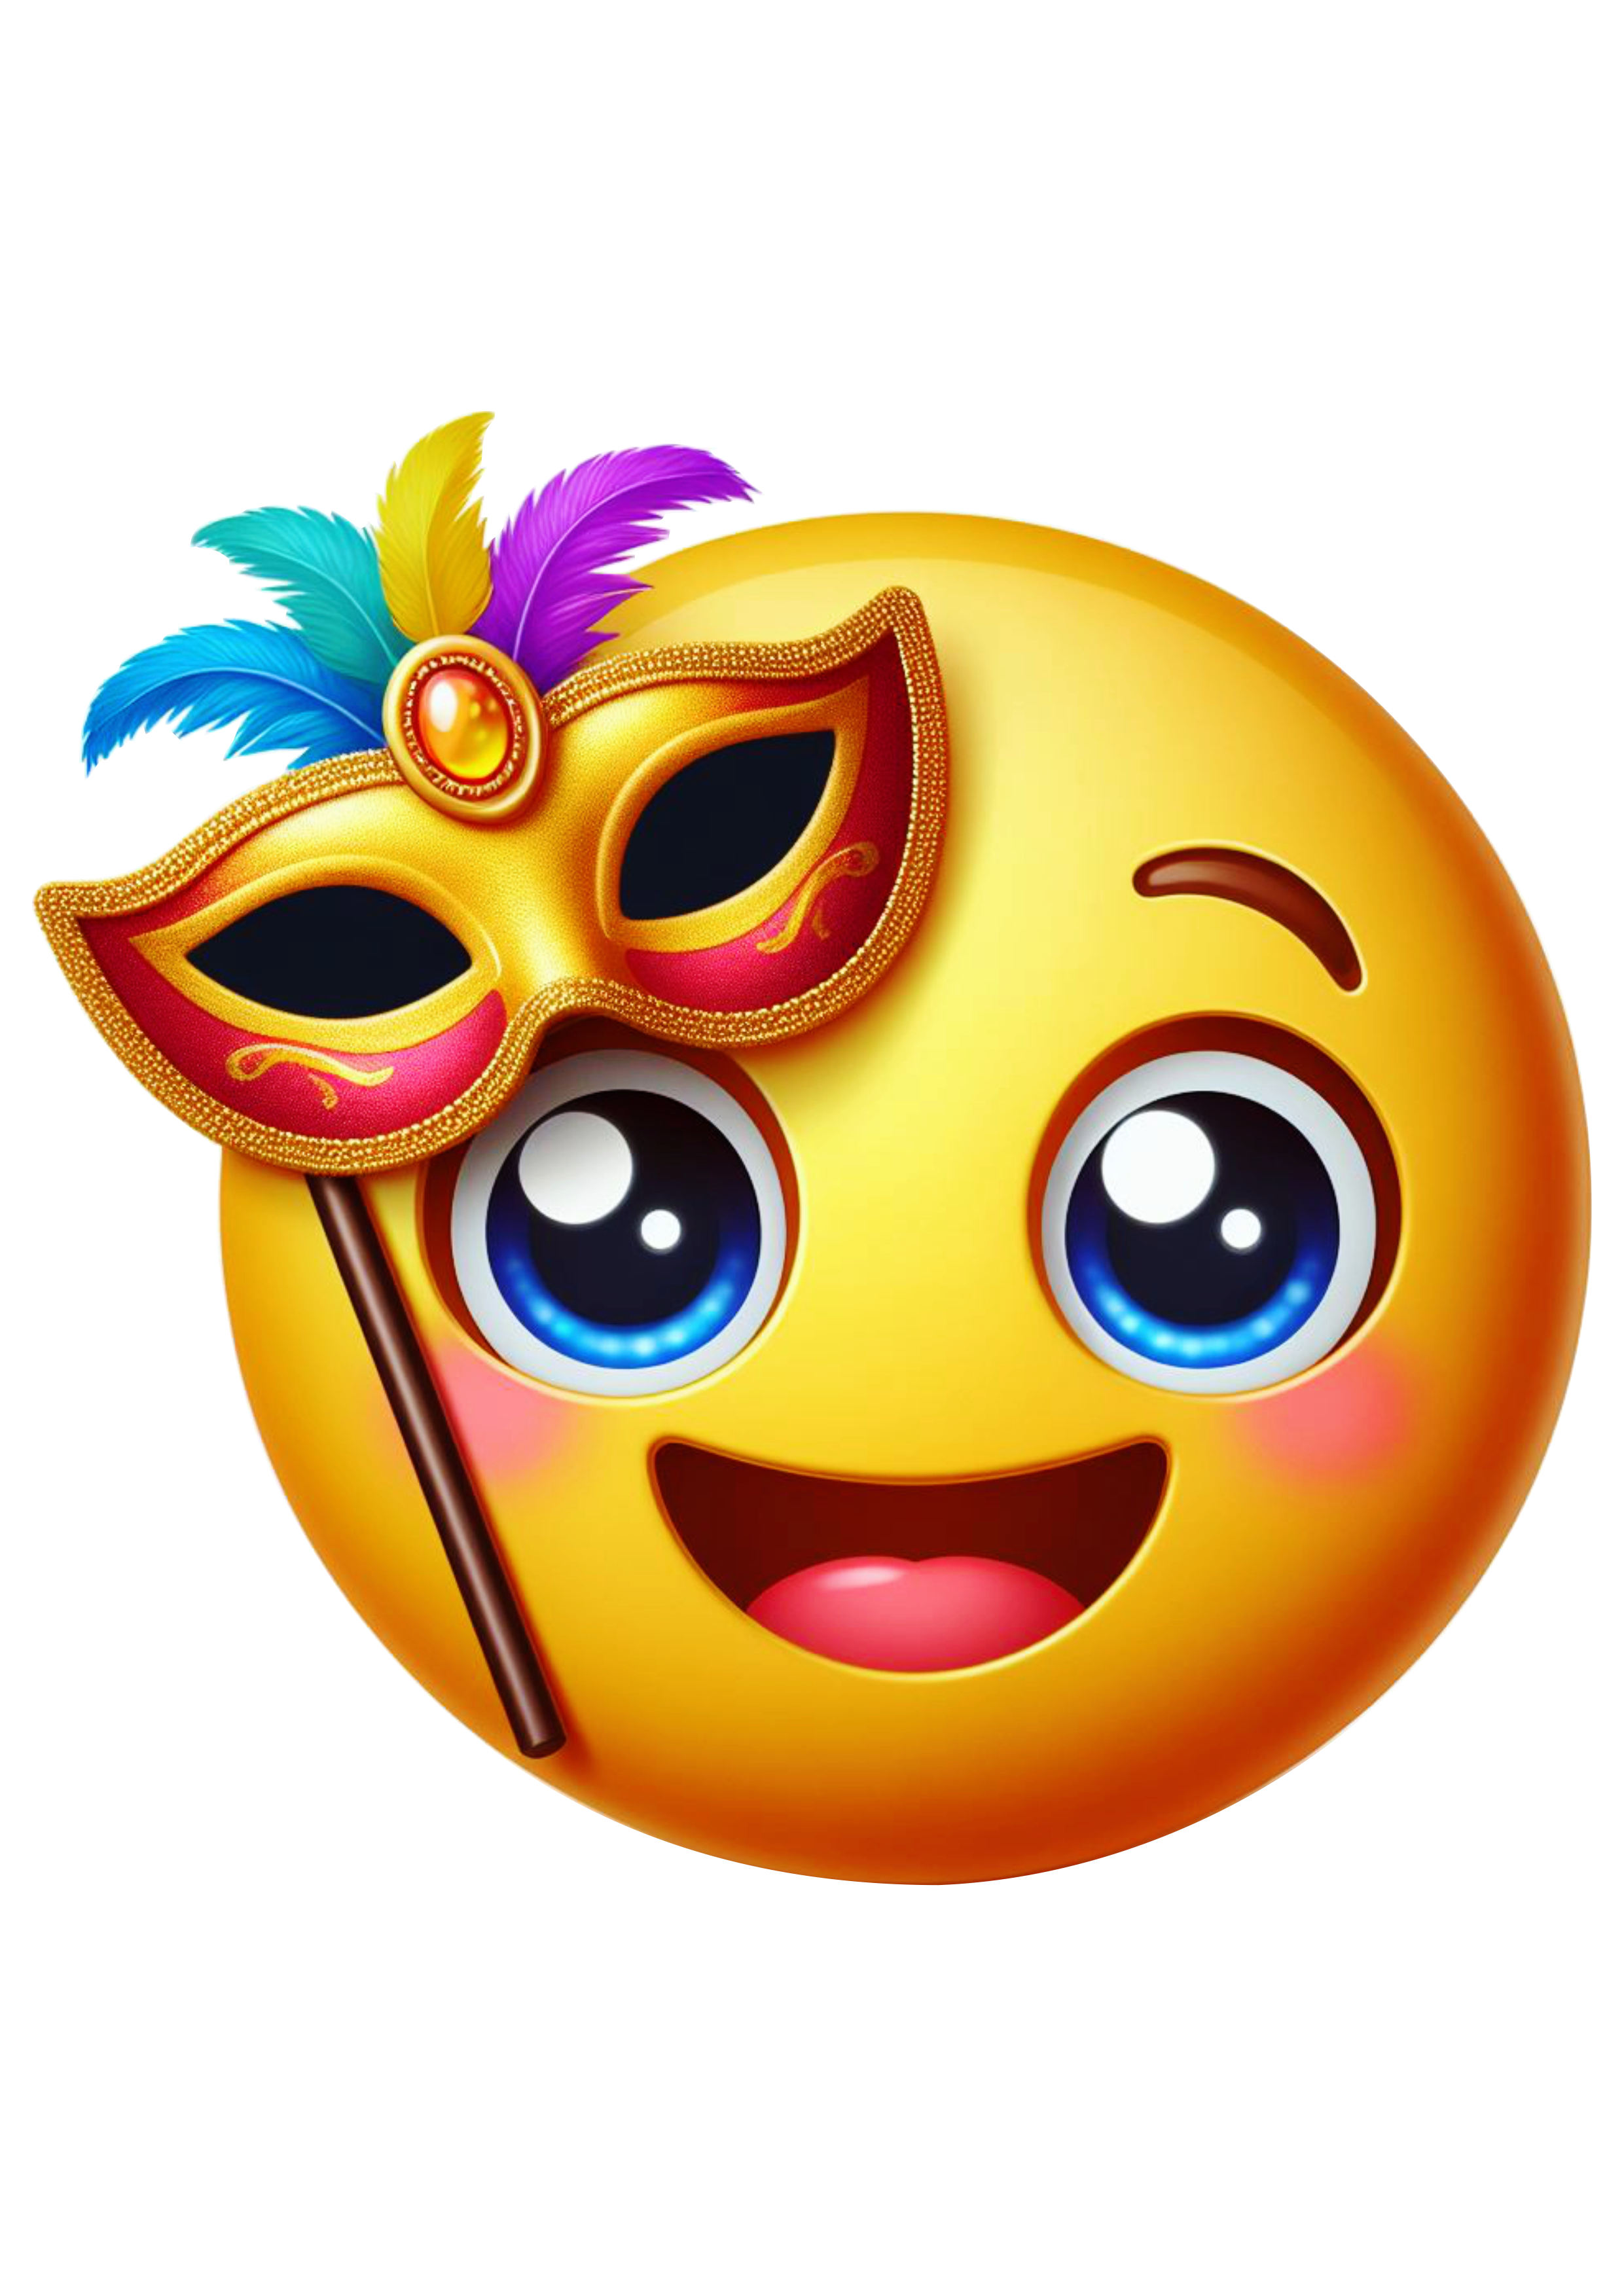 Carnaval emoji para whatsapp instagram e facebook baile de máscaras emoticon free design clipart png